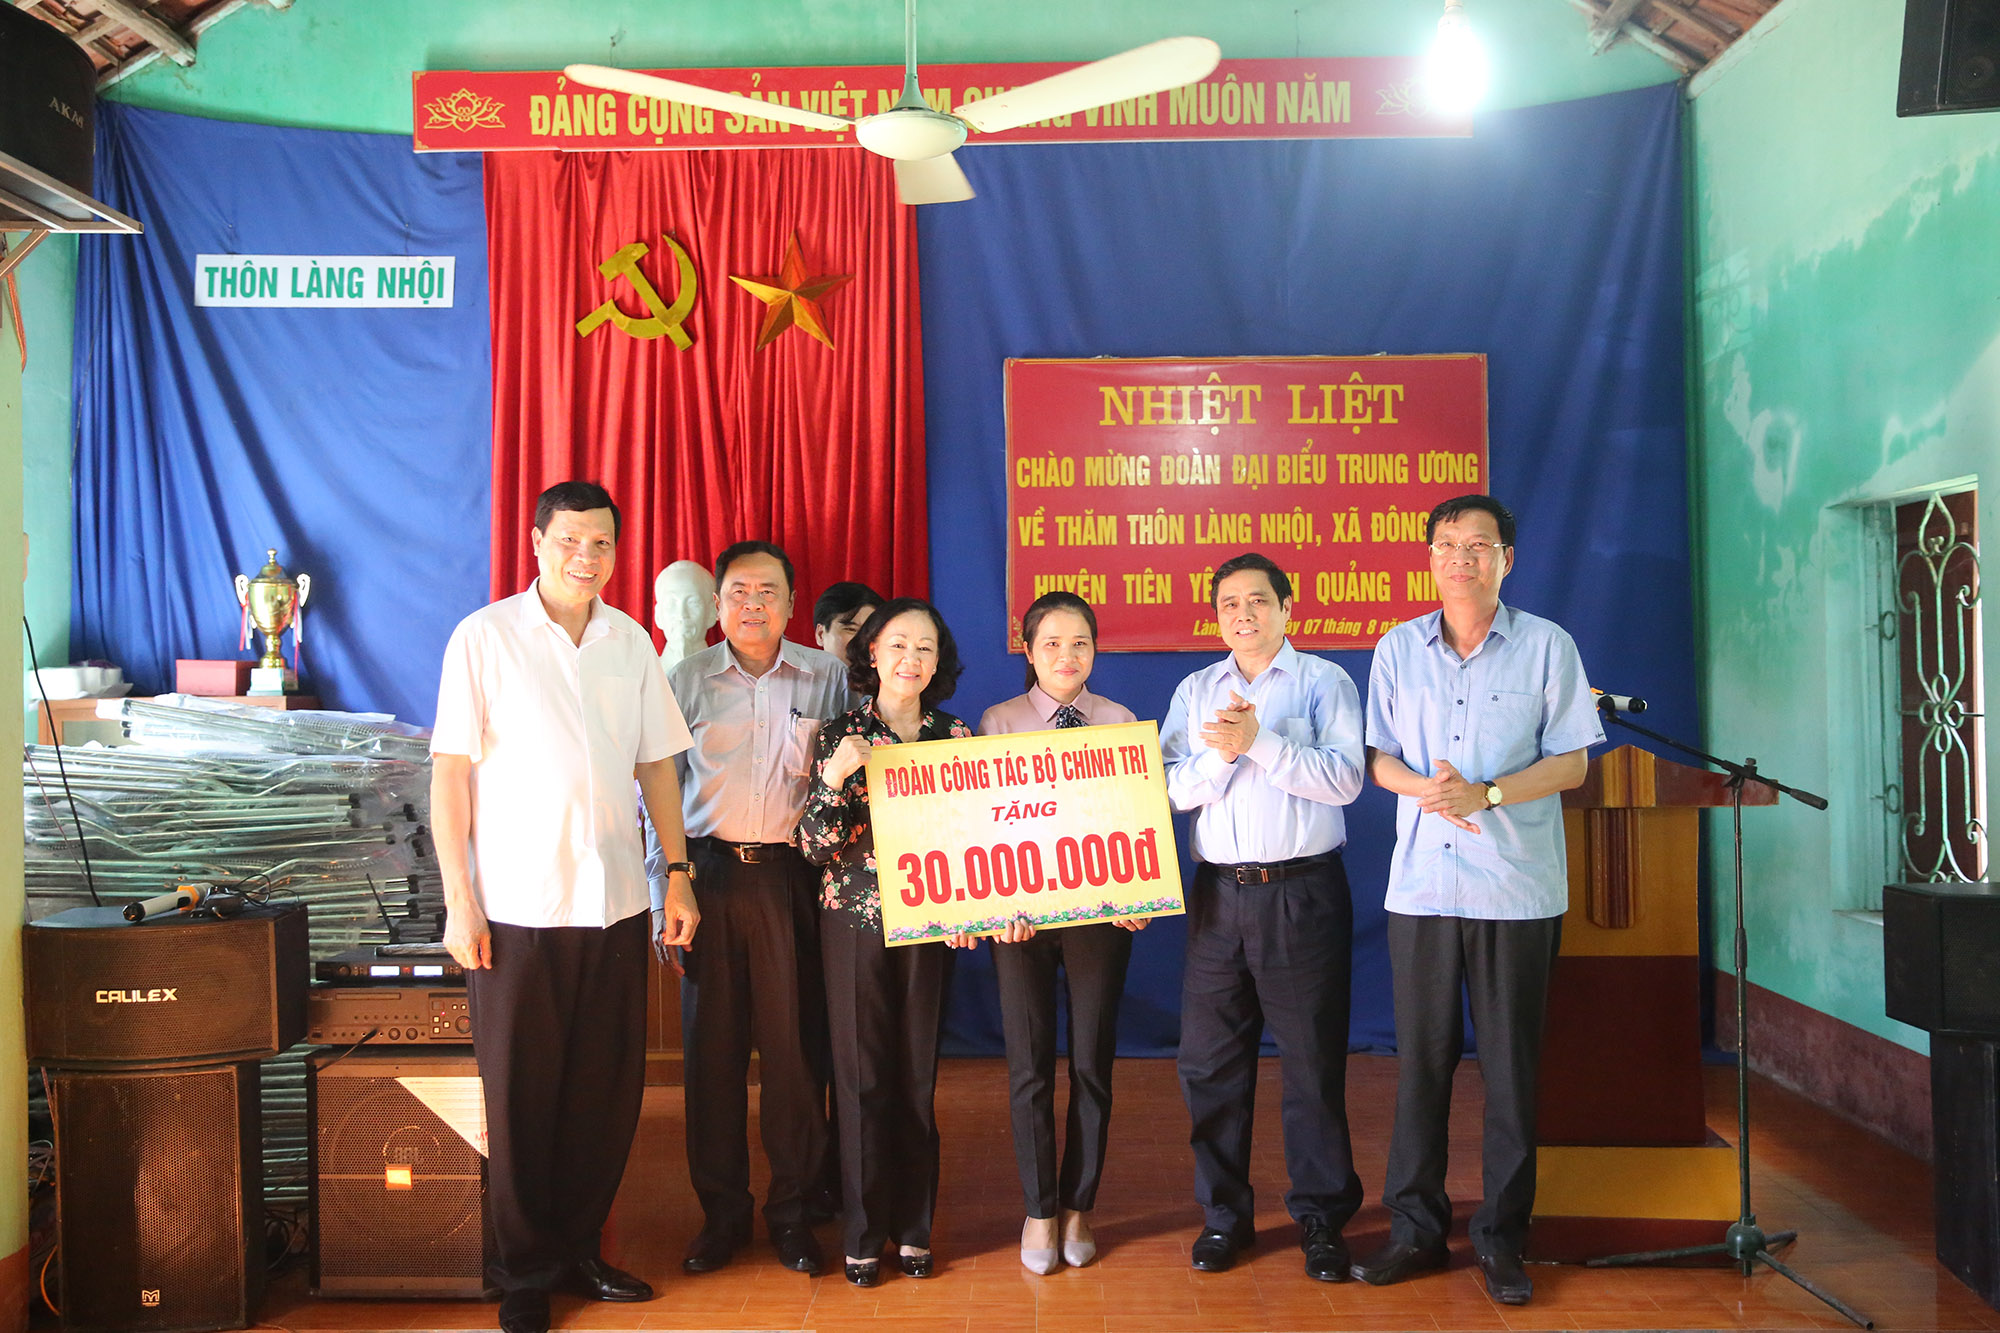 Đoàn cũng đã tới thăm và trao tặng quà cho chính quyền, nhân dân thôn Làng Nhội, xã Đông Hải, huyện Tiên Yên.